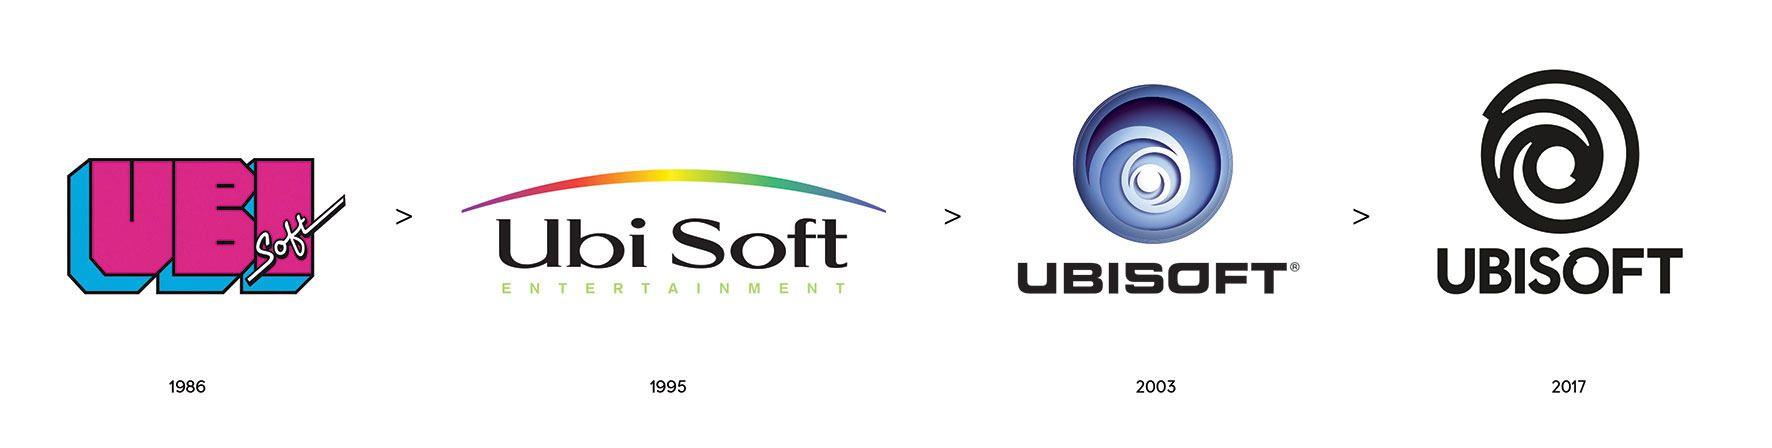 GameSpot Logo - Ubisoft Has A New Logo - GameSpot